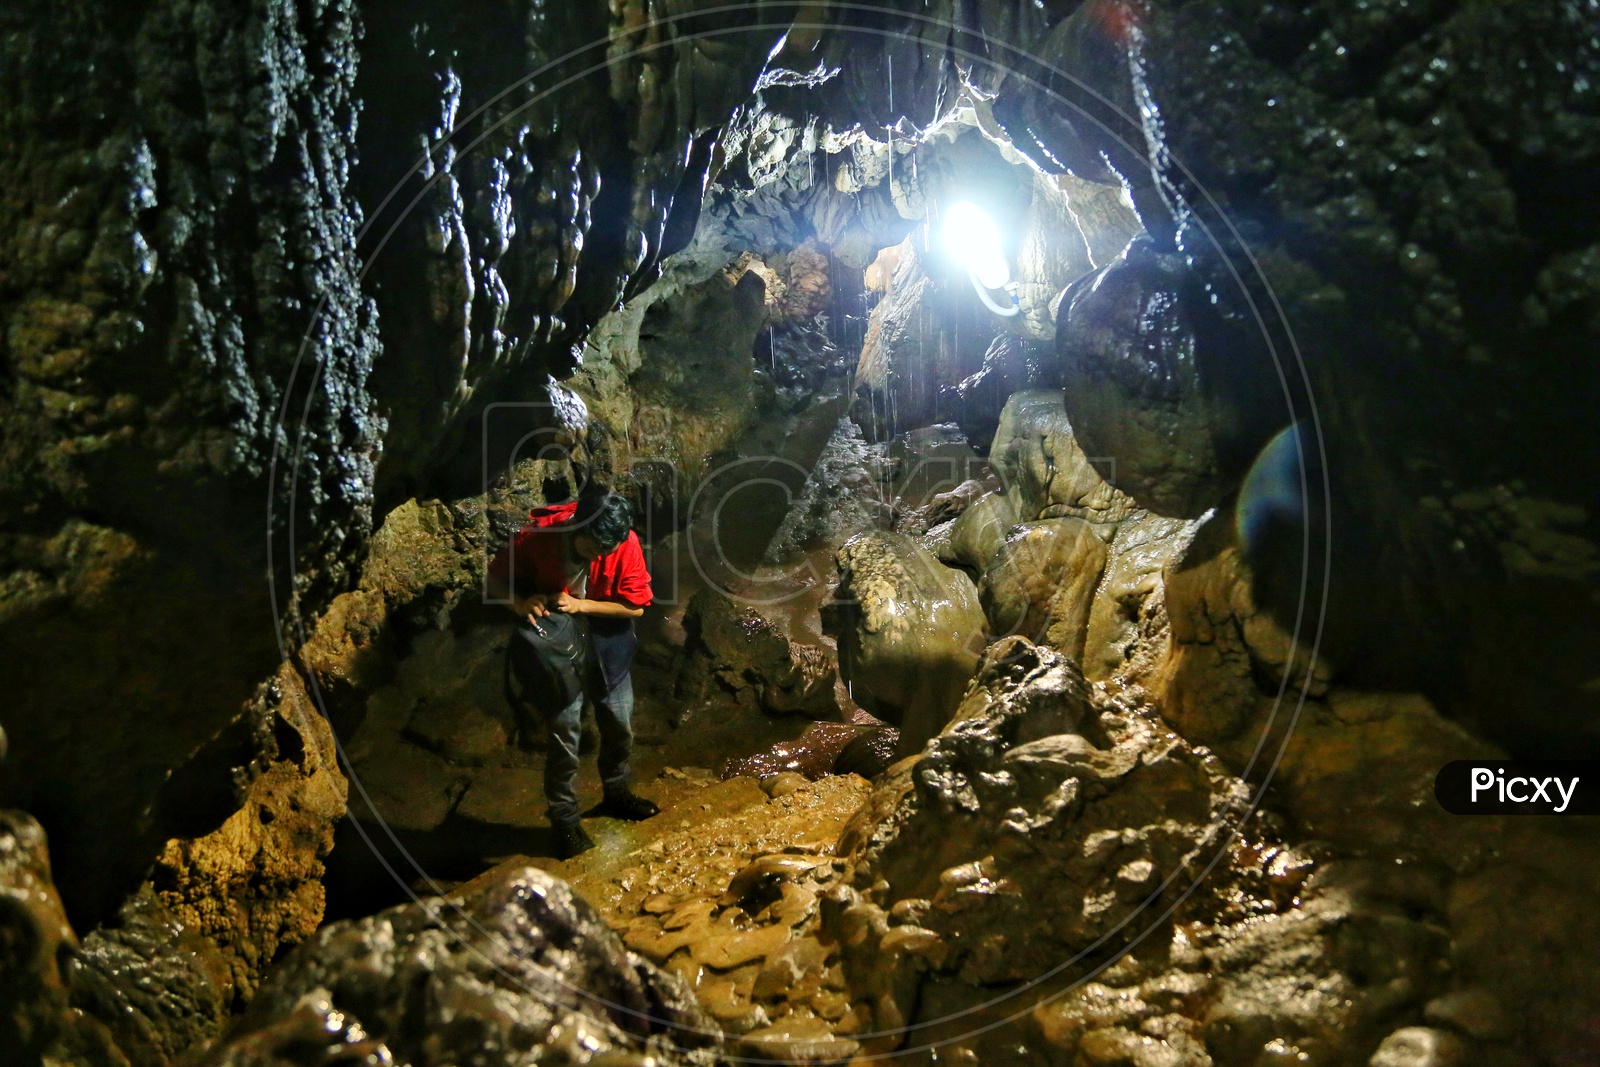 Cherrapunjee cave.